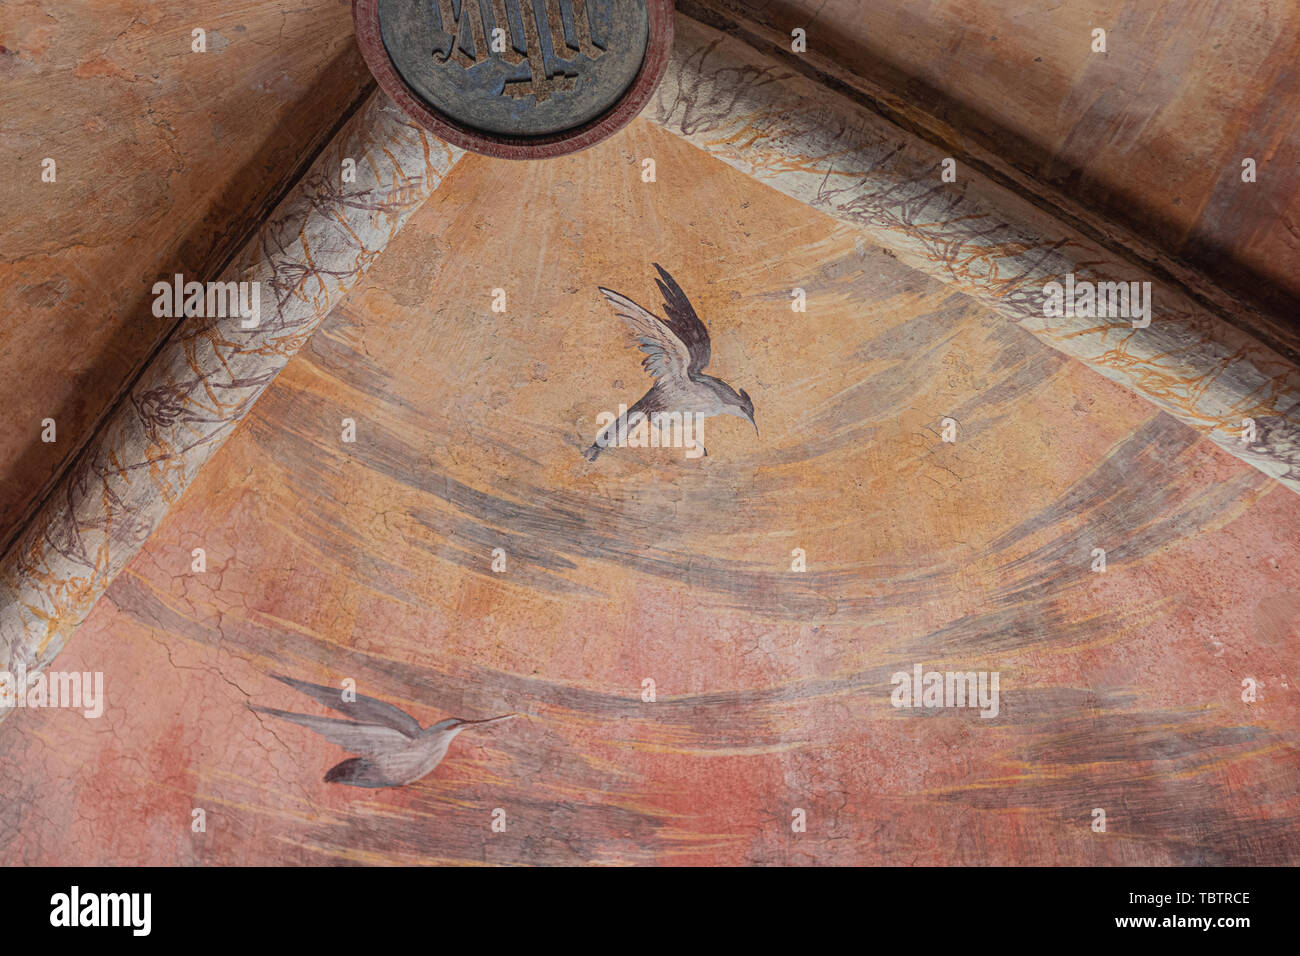 Langhirano, Italien: Juni 2, 2019: Detail eines Freskos an den Wänden von torrechiara Burg in Parma, die ein Vogel fliegen in den Himmel Stockfoto